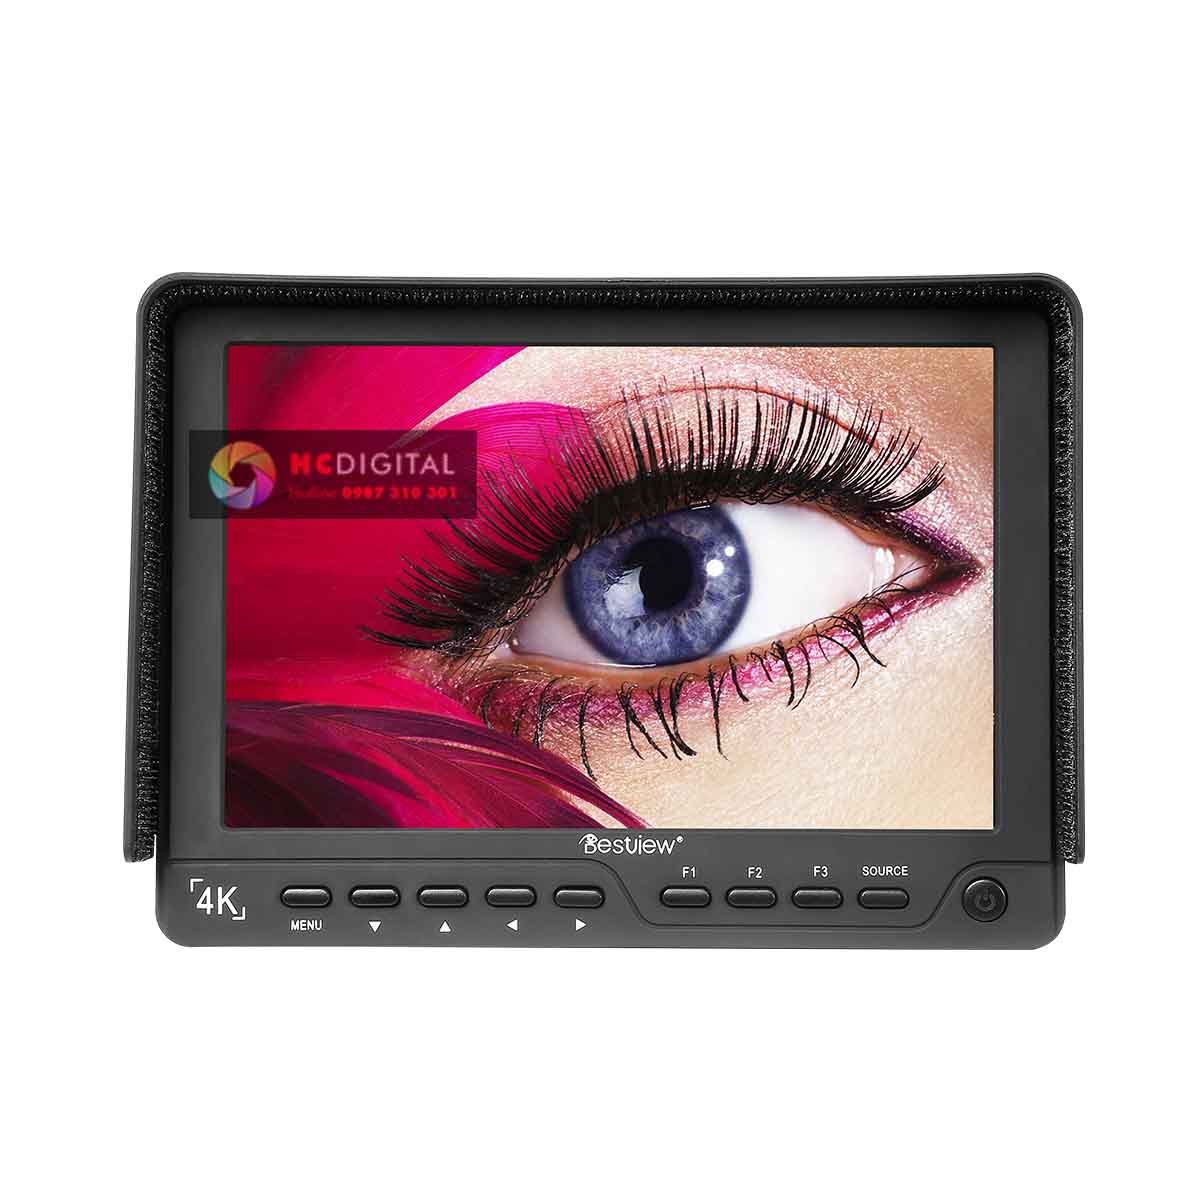 Monitor 7 inch màn hình cổng HD-SDI, HDMI 1920×1080, 4K